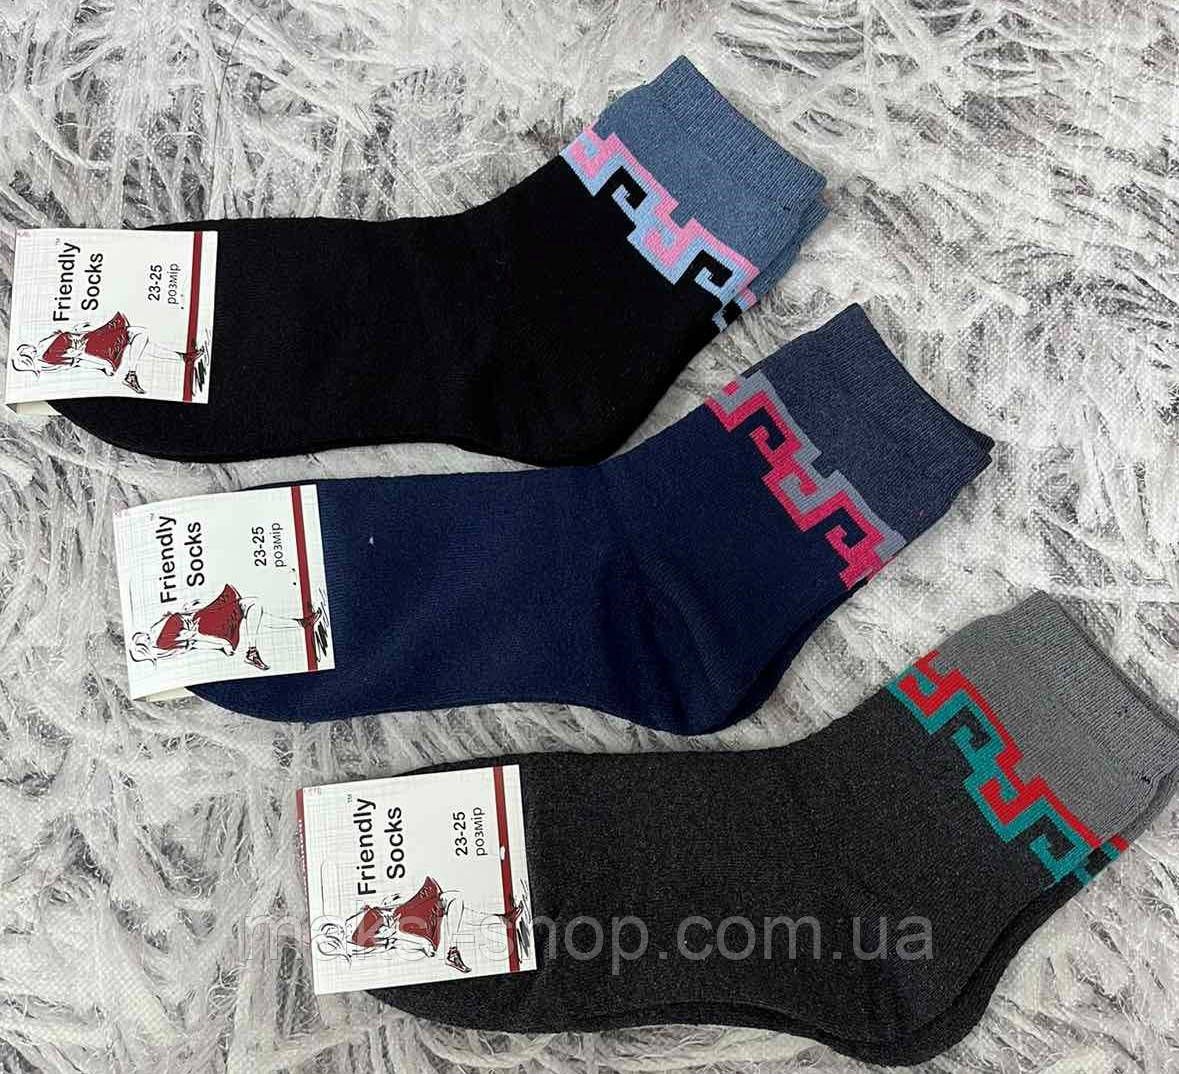 Шкарпетки жіночі Friendly Socks махрові  Розмір 23-25 відповідає 36-40